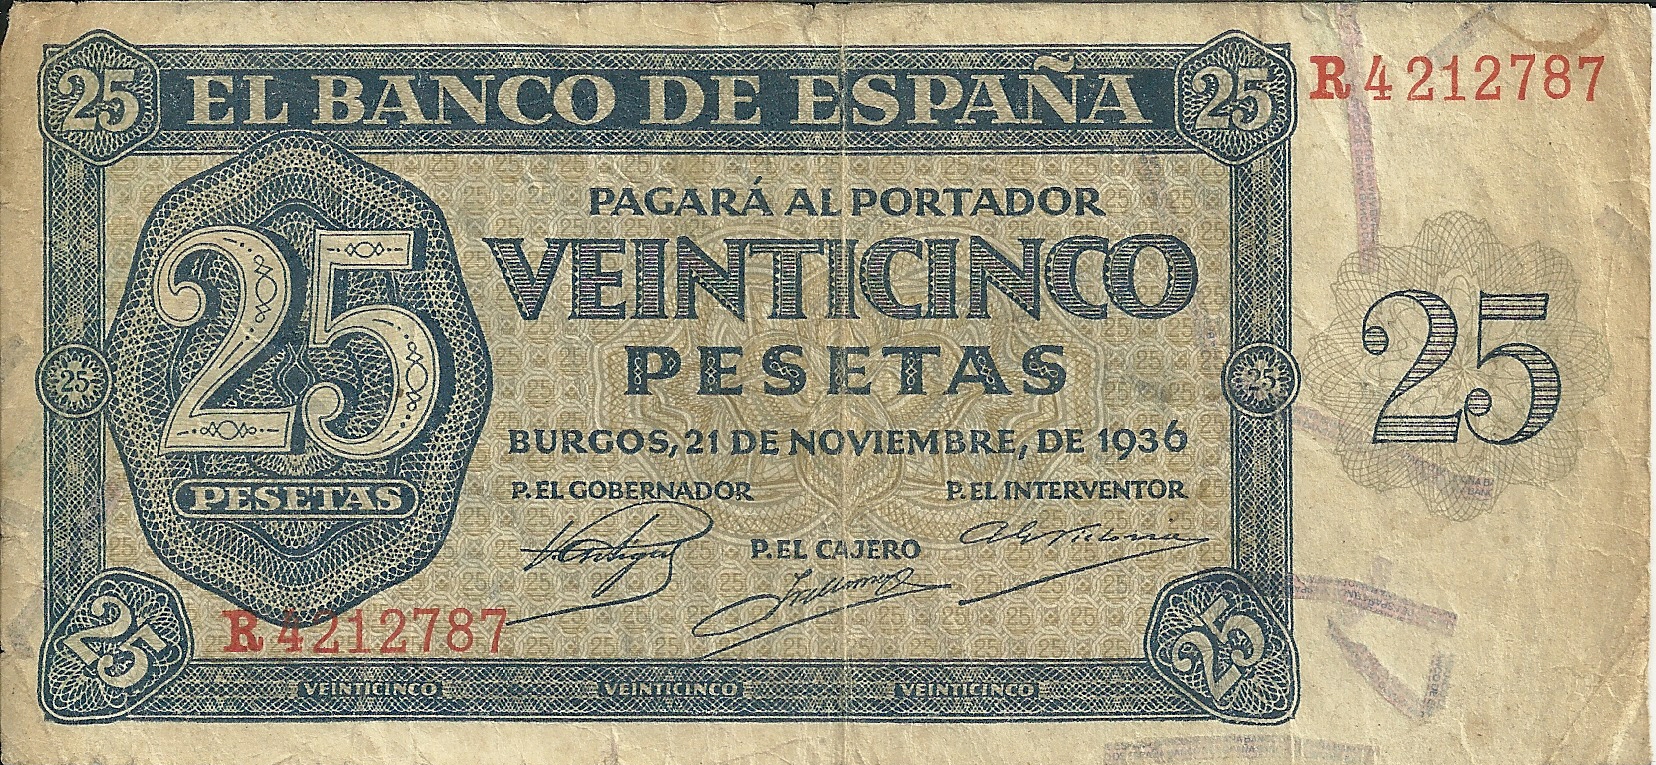 Billetes - España - Estado Español (1936 - 1975) - 25 ptas - 472 - BC+ - Año 1936 - num ref: R4212787